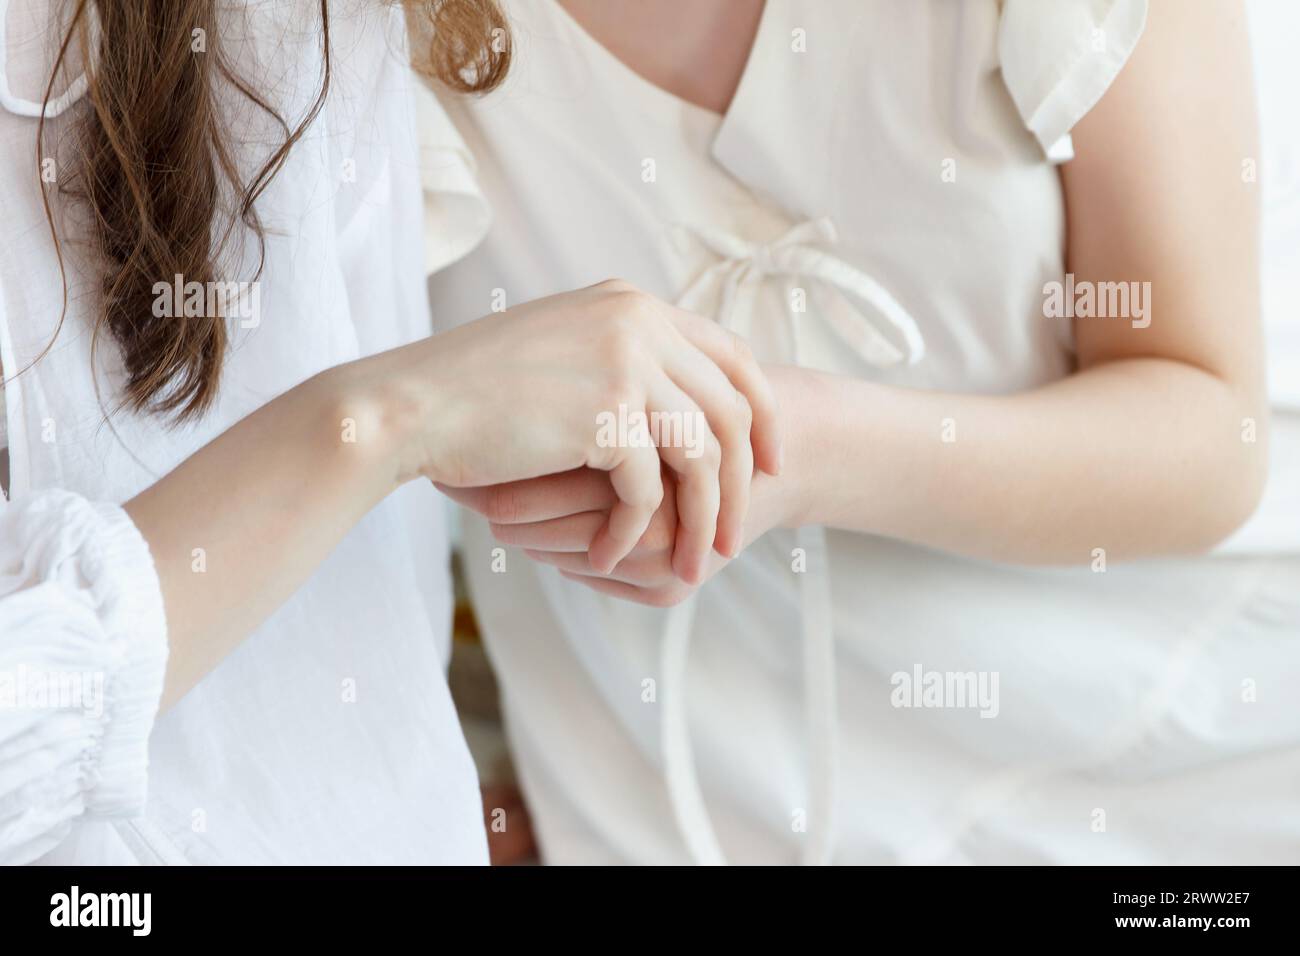 Due ragazze, vestite di bianco, si toccano la mano a vicenda. Parte del corpo. Messa a fuoco delle dita Foto Stock